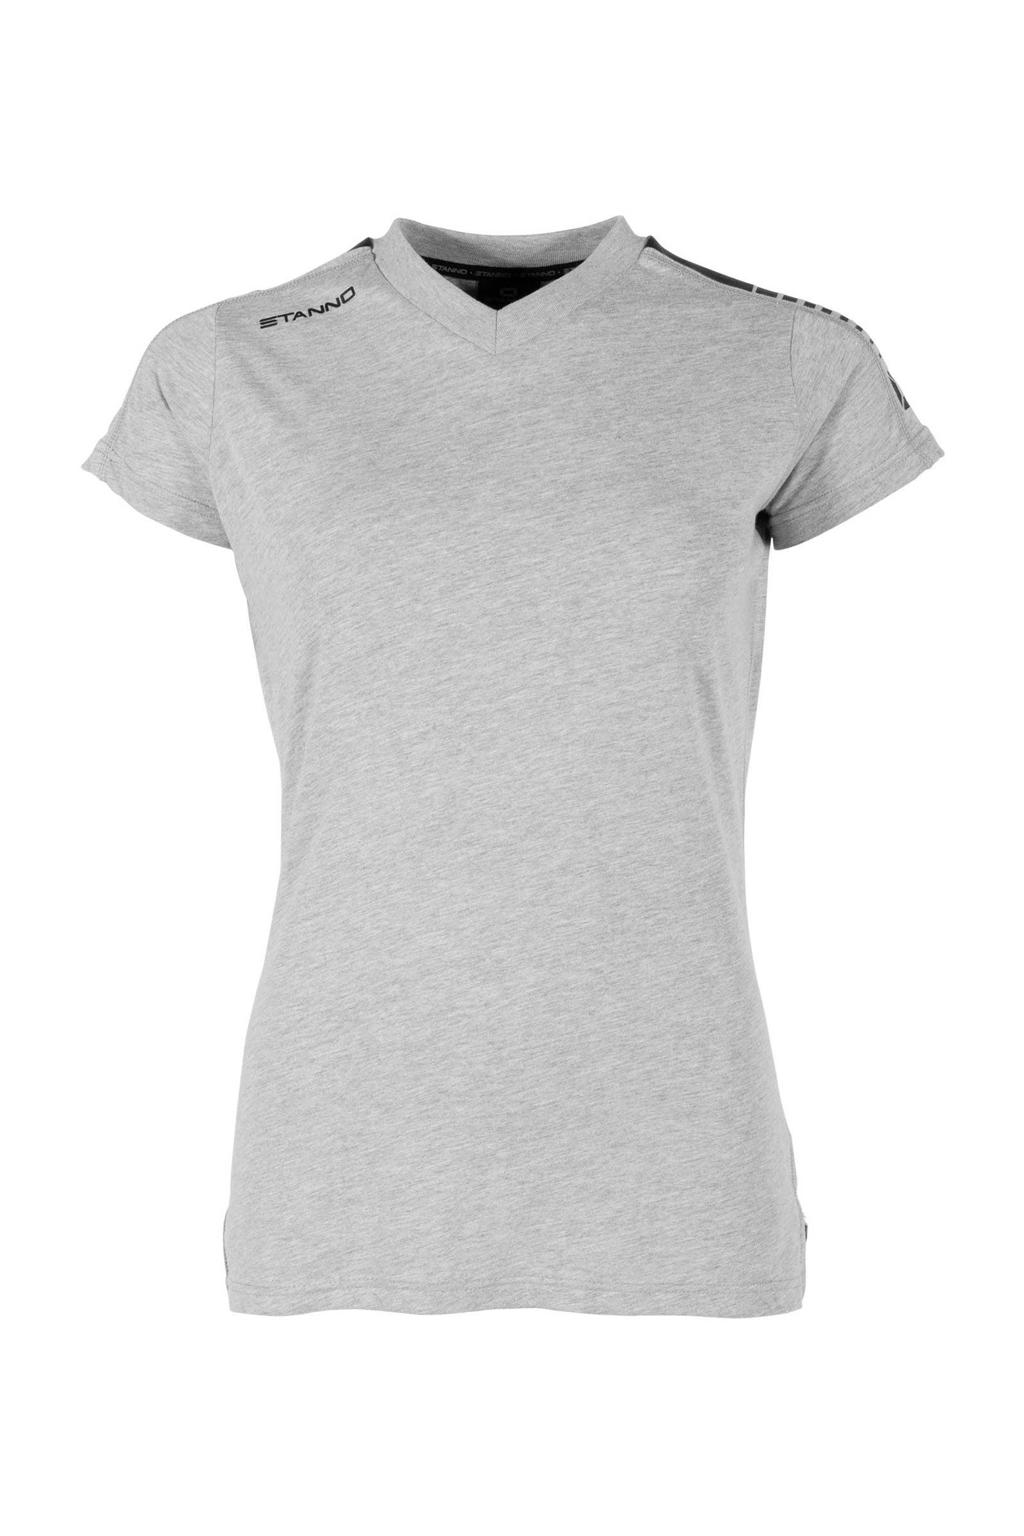 Grijze dames Stanno sport T-shirt melange van katoen met korte mouwen en V-hals